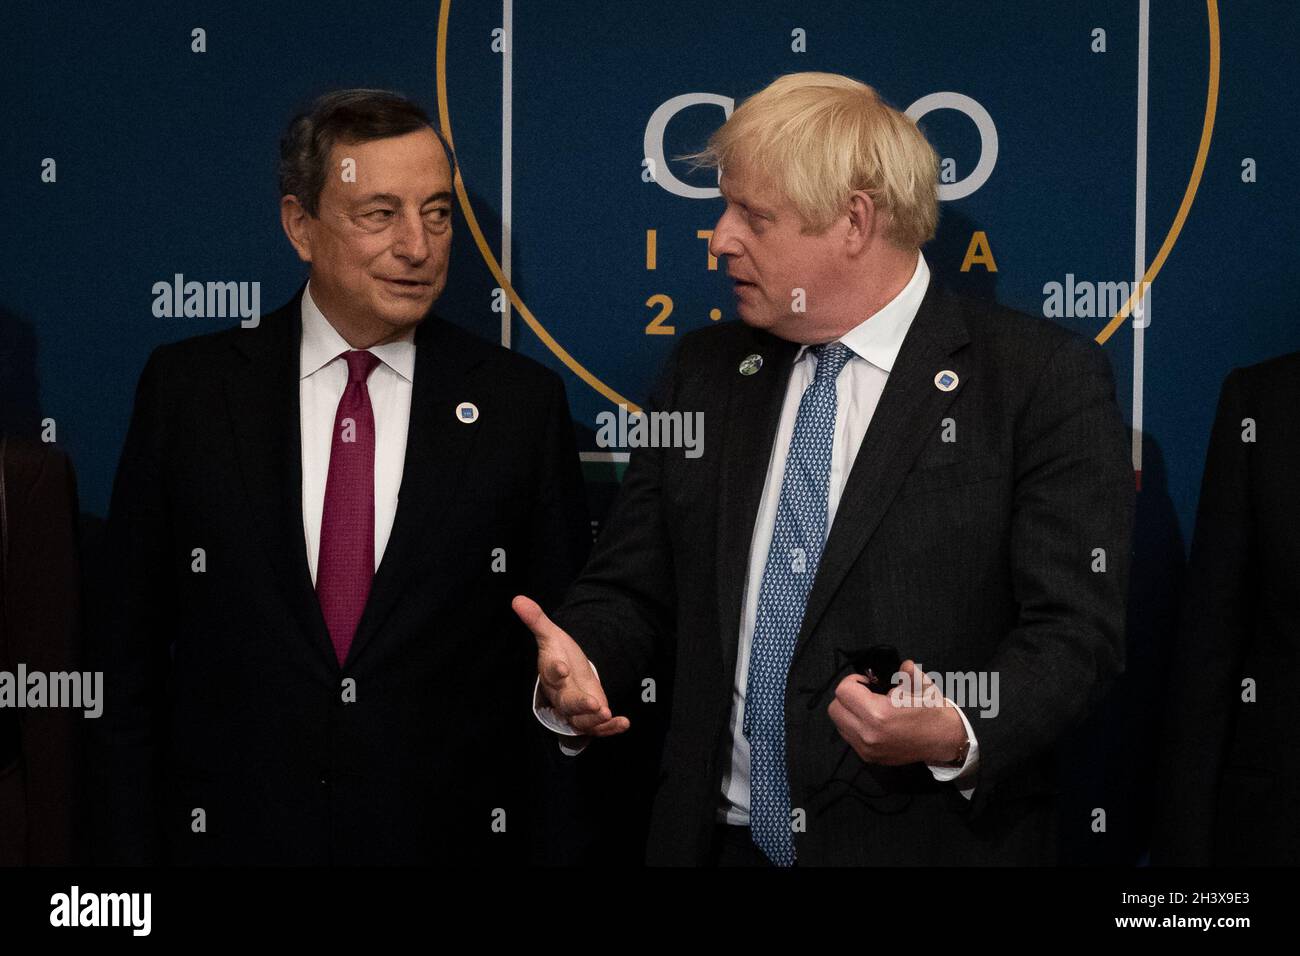 Premierminister Boris Johnson wird vom italienischen Premierminister Mario Draghi (links) begrüßt, als er zu einem Empfang und Abendessen im Quirinale-Palast in Rom eintrifft. Bilddatum: Samstag, 30. Oktober 2021. Stockfoto